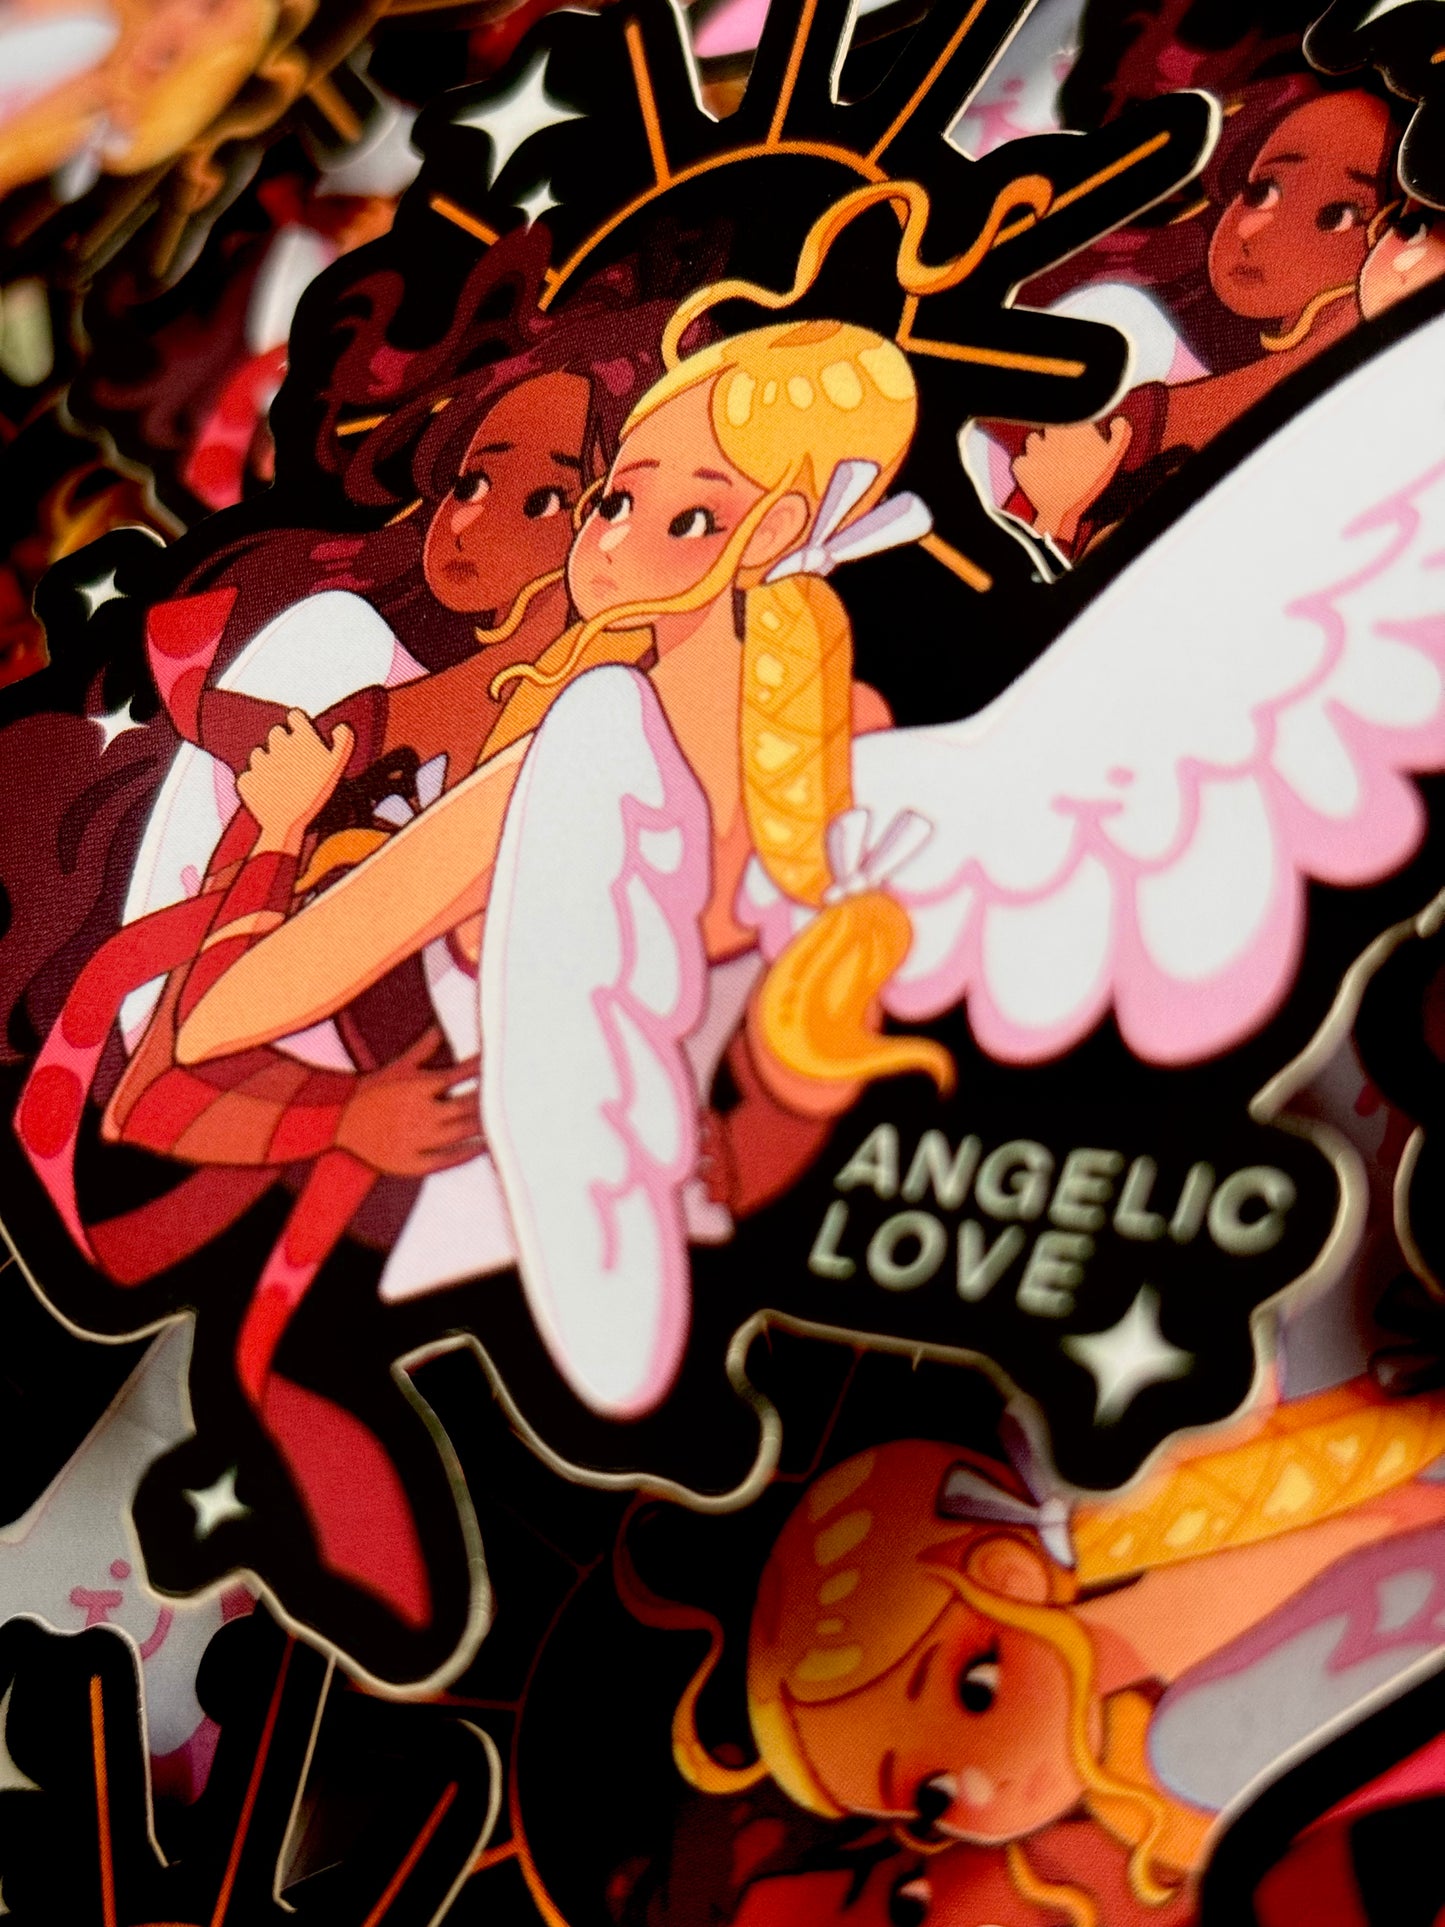 ANGELIC LOVE - vinyl mirror sticker